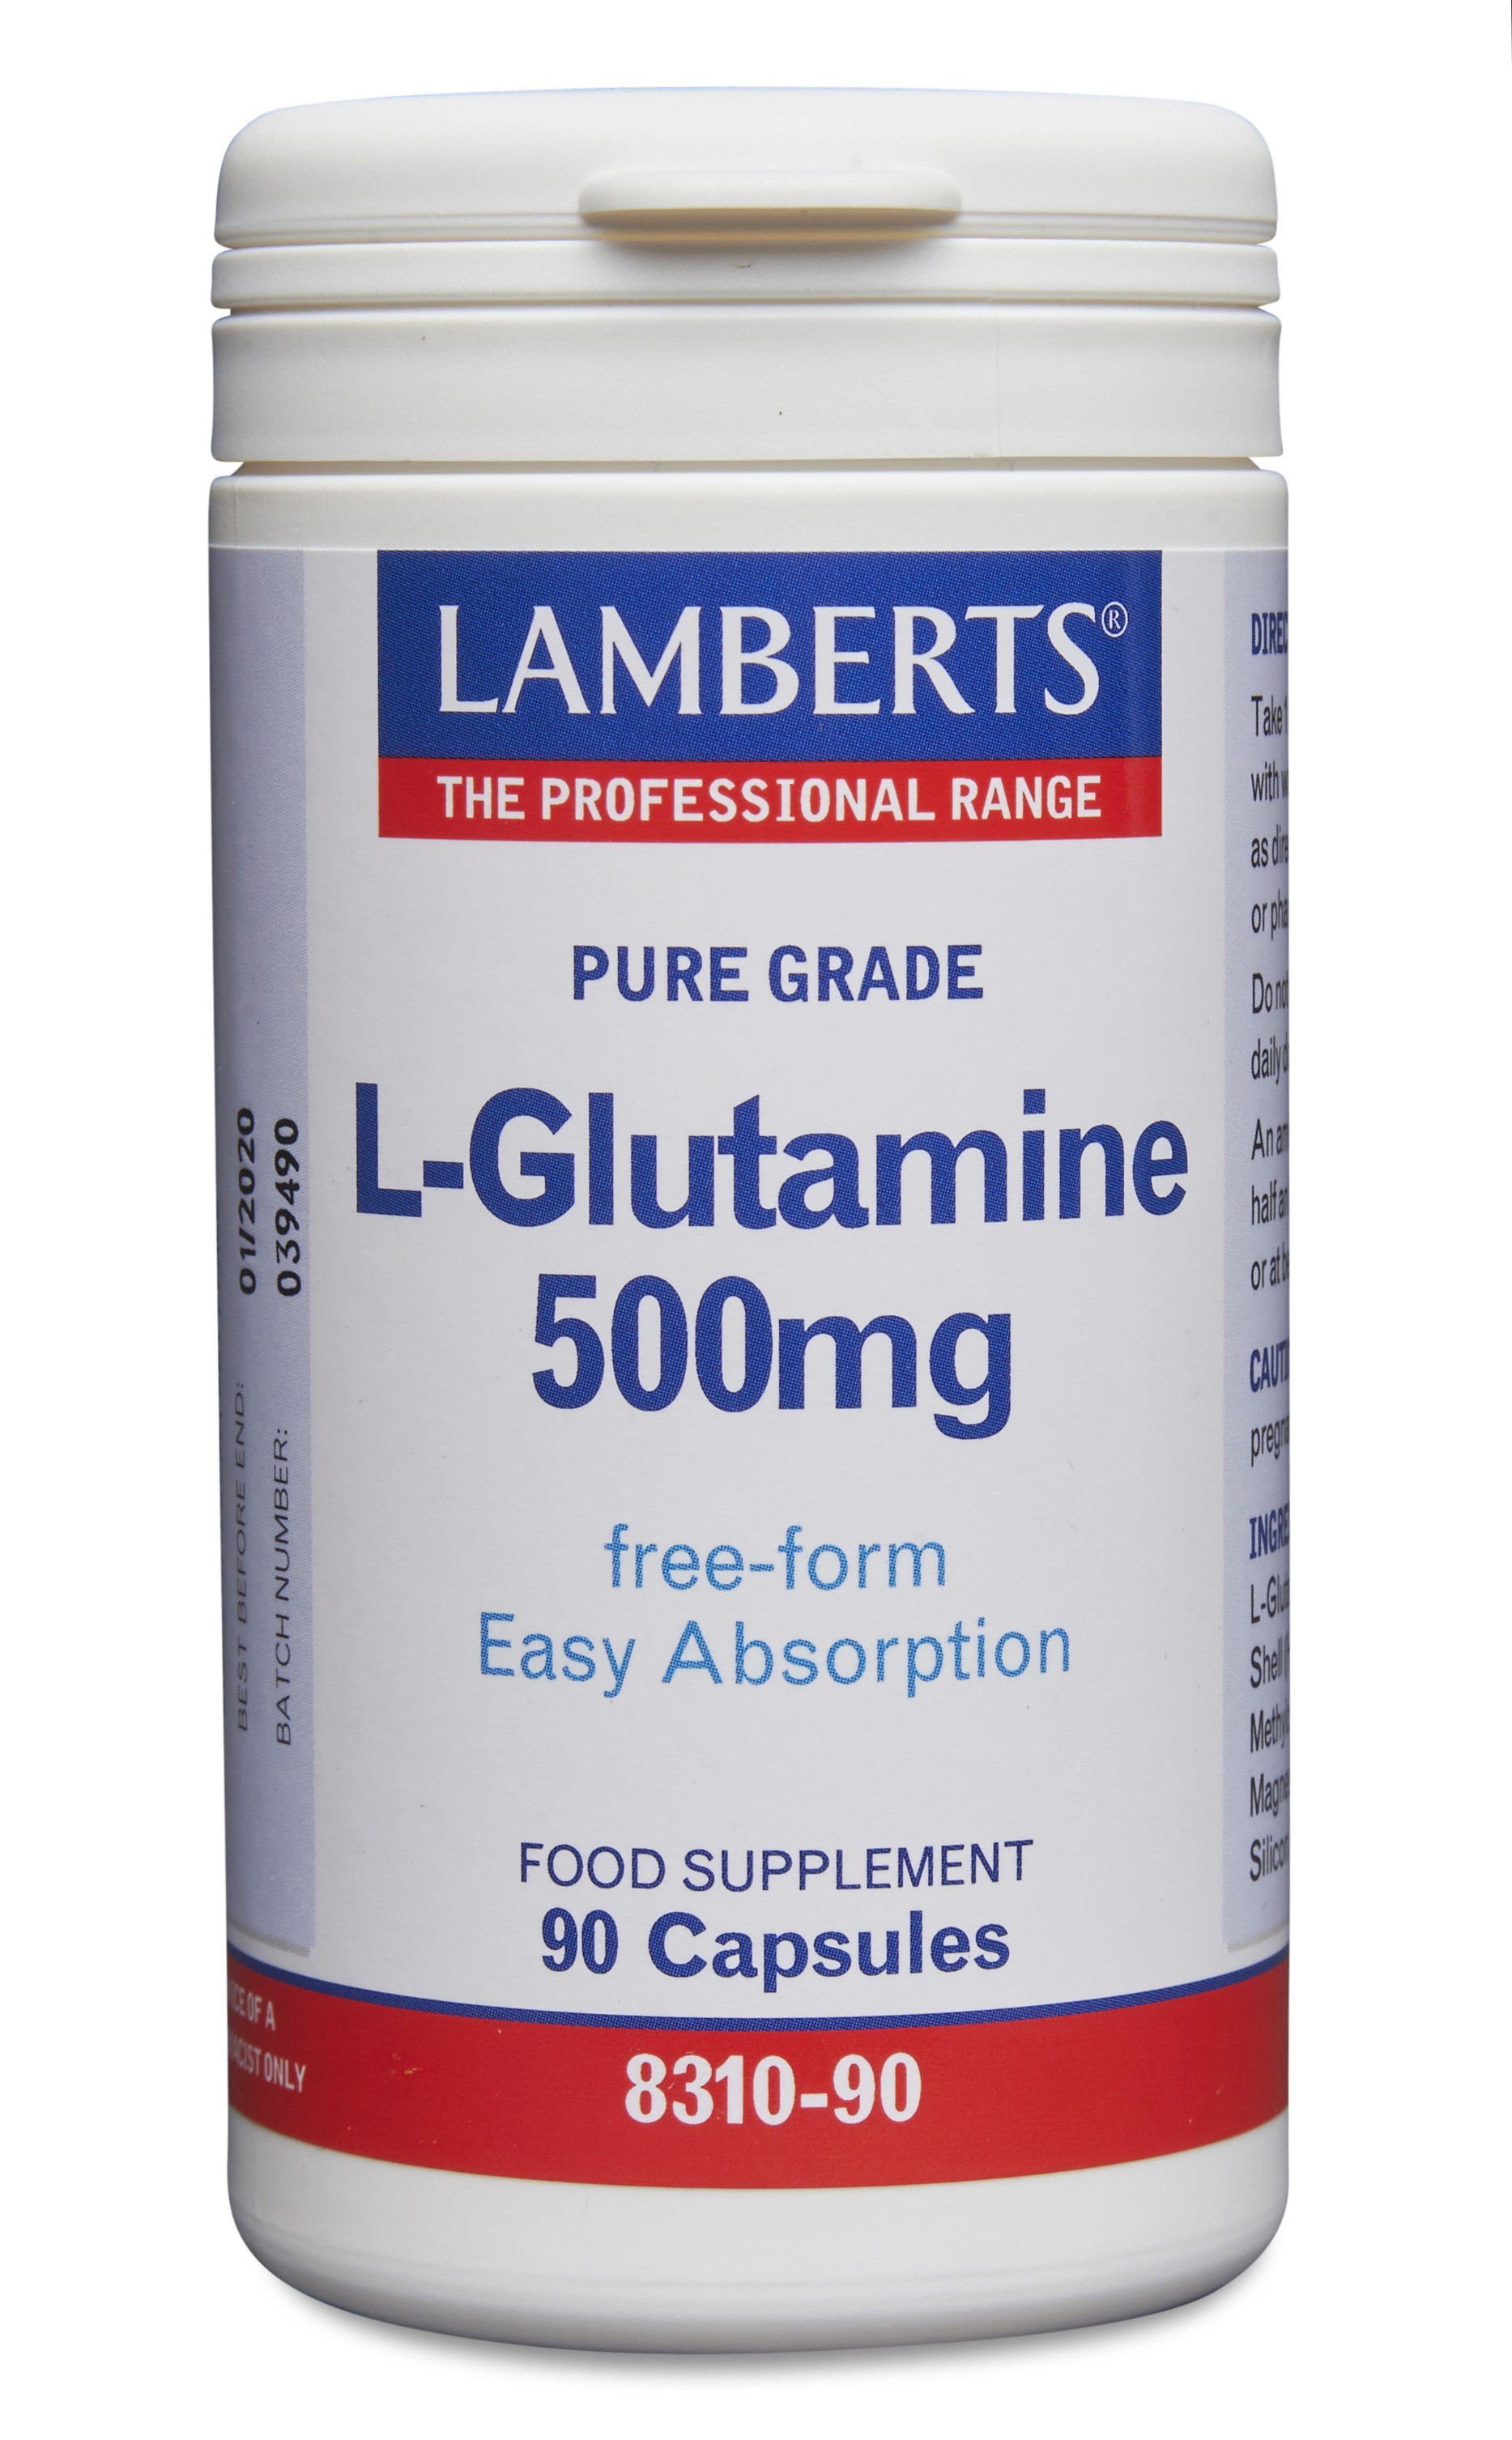 Lamberts L-Glutamine 500mg